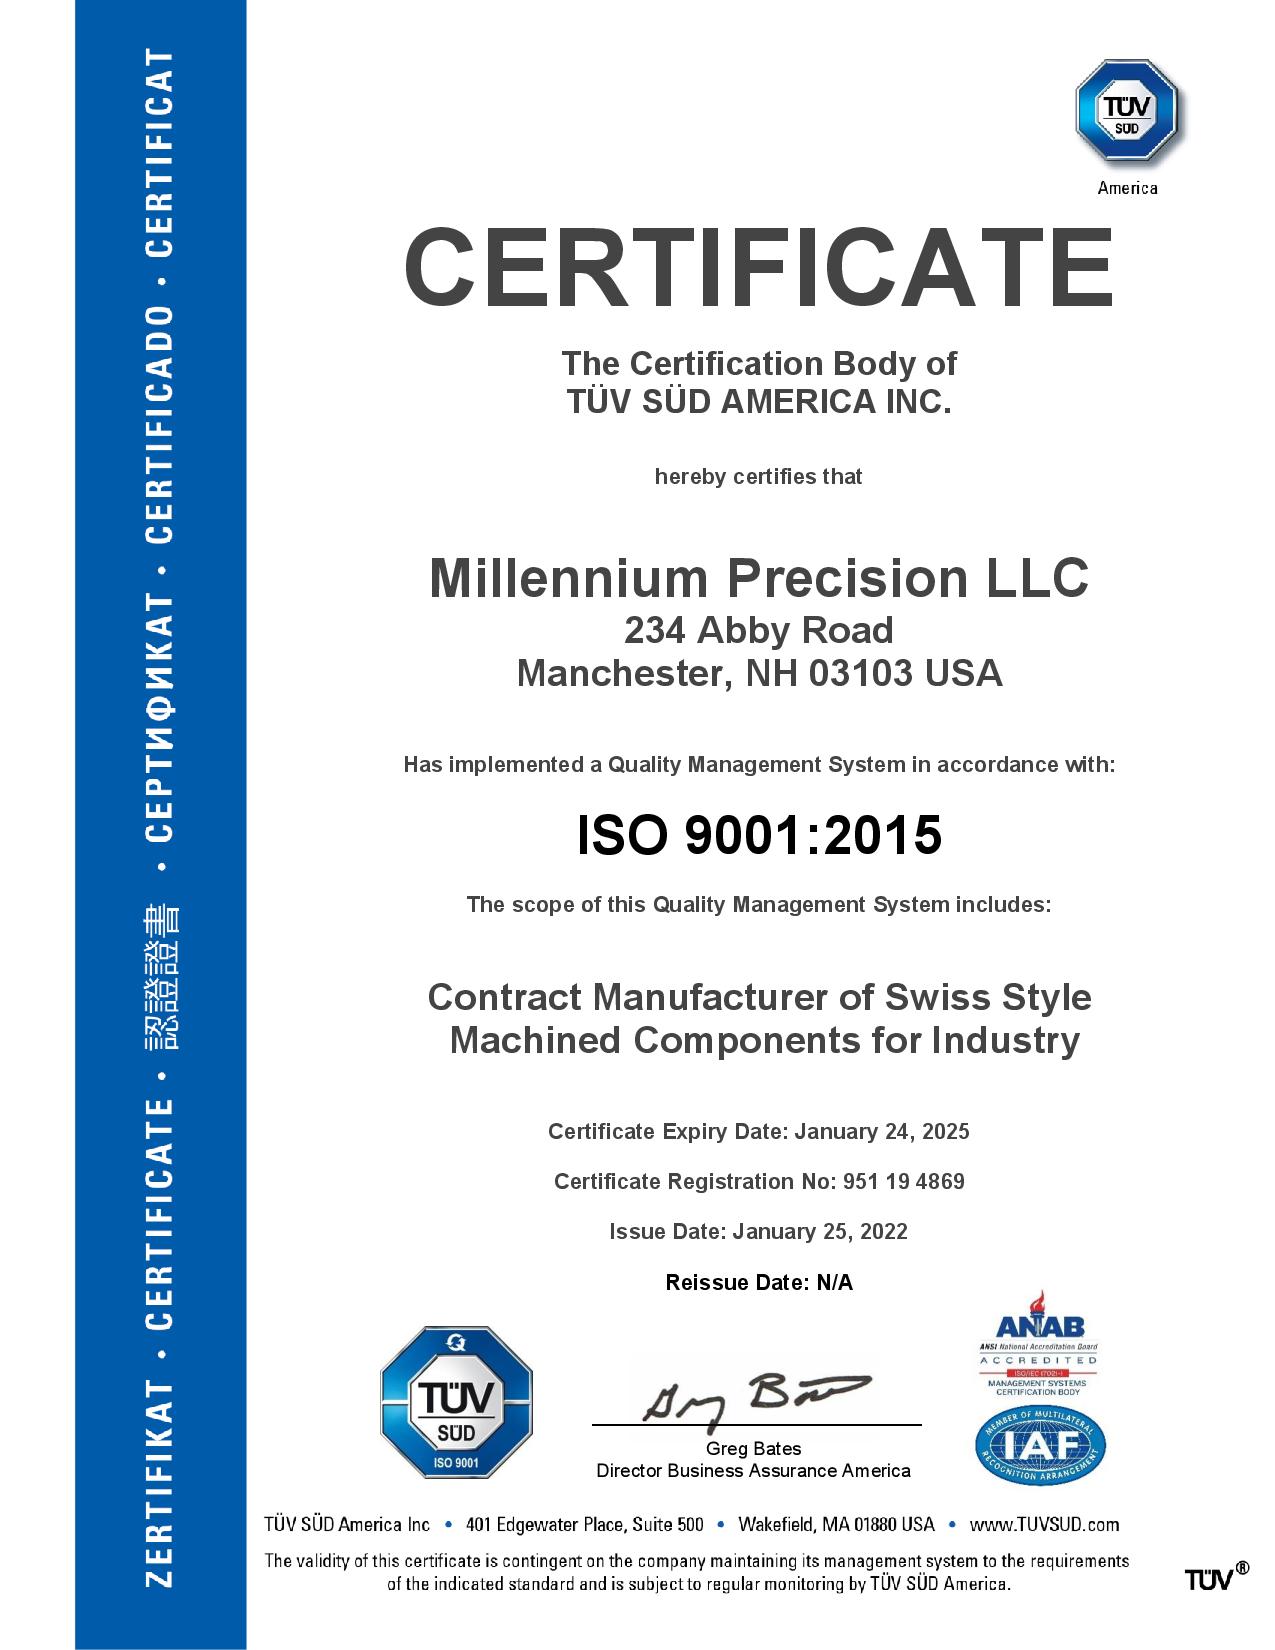 Millennium Precision ISO Certificate